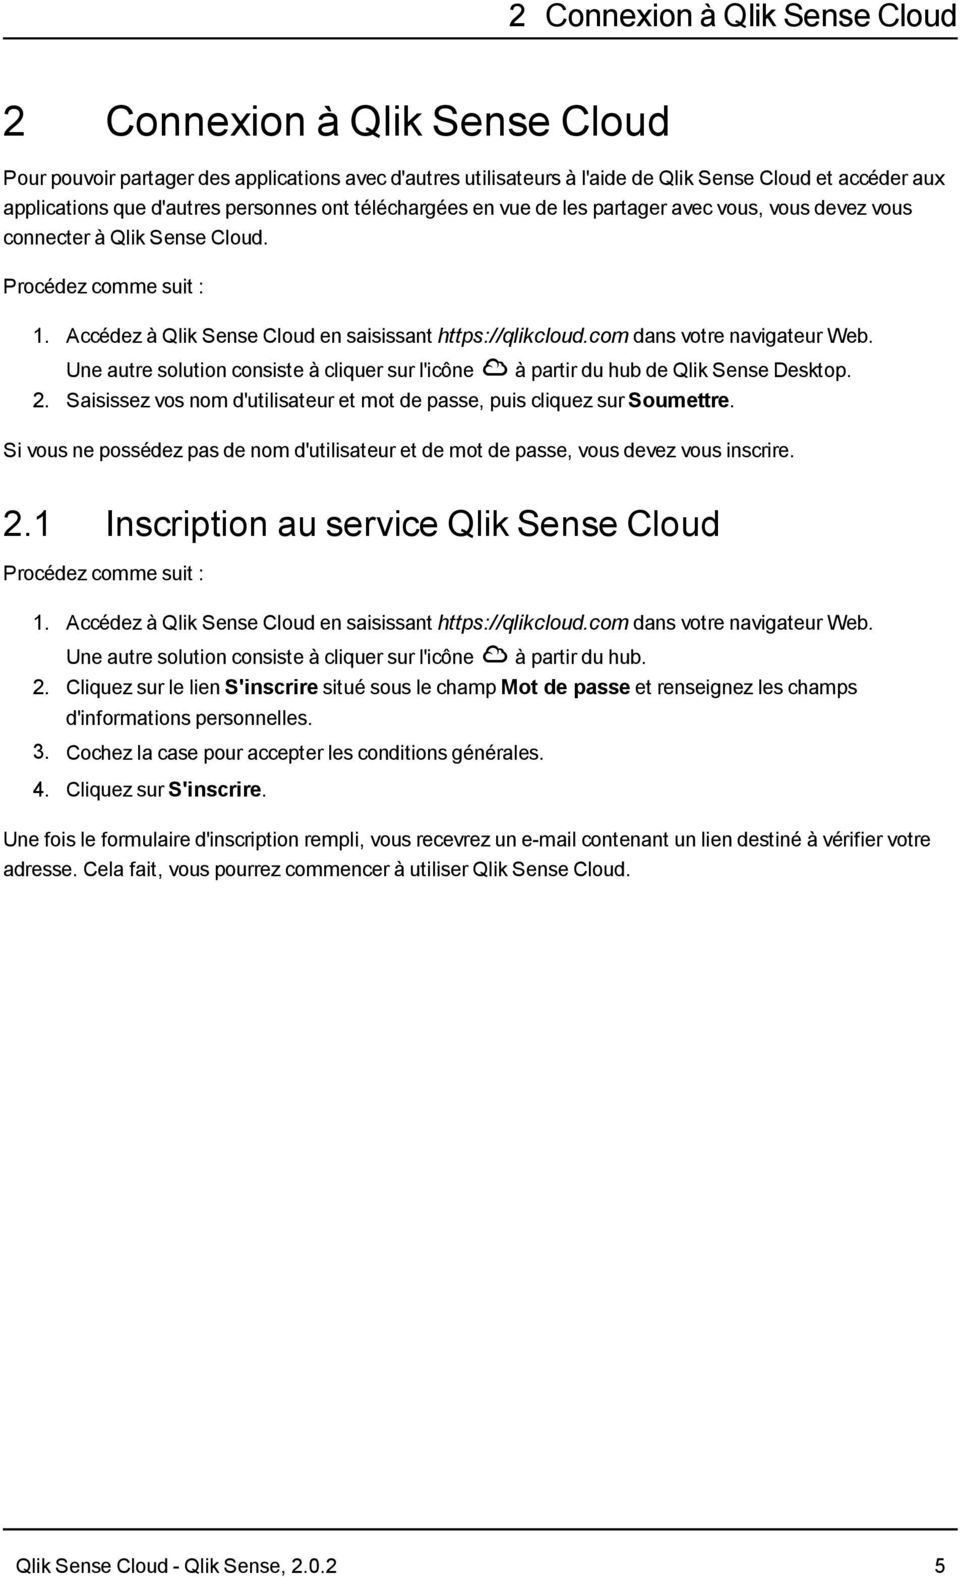 Une autre solution consiste à cliquer sur l'icône à partir du hub de Qlik Sense Desktop. 2. Saisissez vos nom d'utilisateur et mot de passe, puis cliquez sur Soumettre.